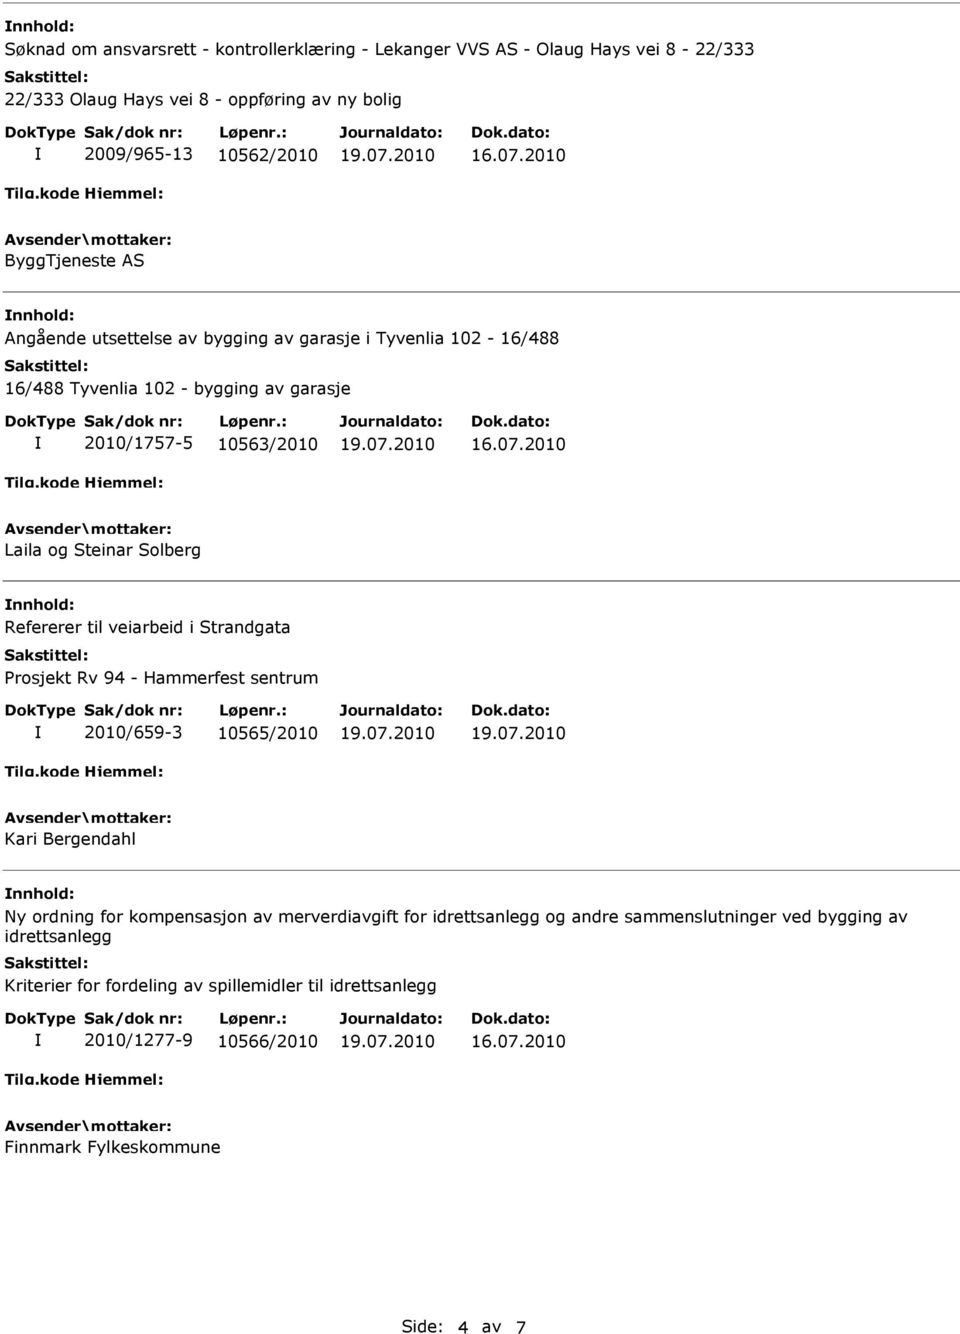 Solberg nnhold: Refererer til veiarbeid i Strandgata Prosjekt Rv 94 - Hammerfest sentrum 2010/659-3 10565/2010 Kari Bergendahl nnhold: Ny ordning for kompensasjon av